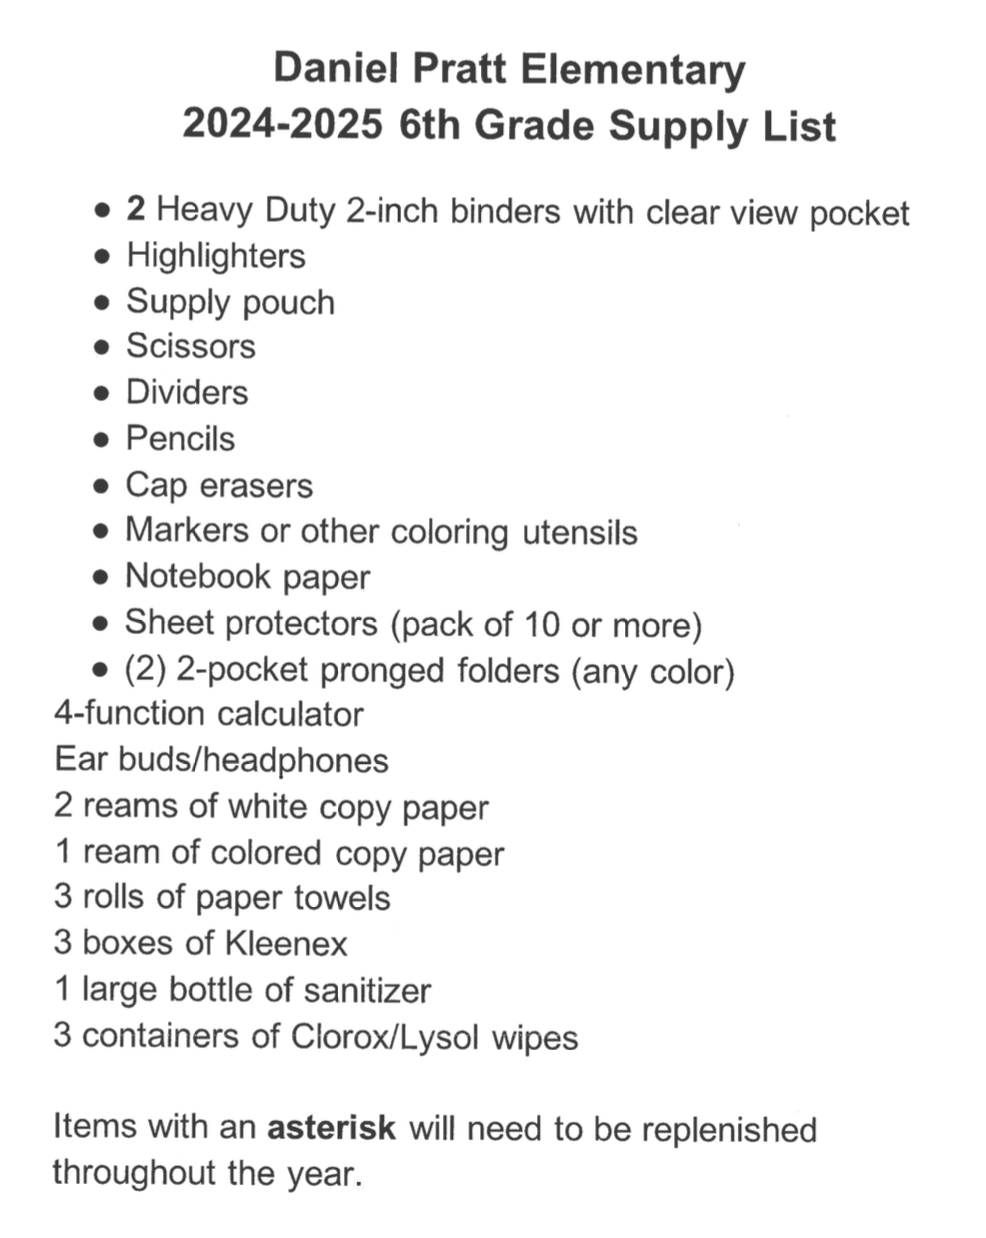 6th grade supply list